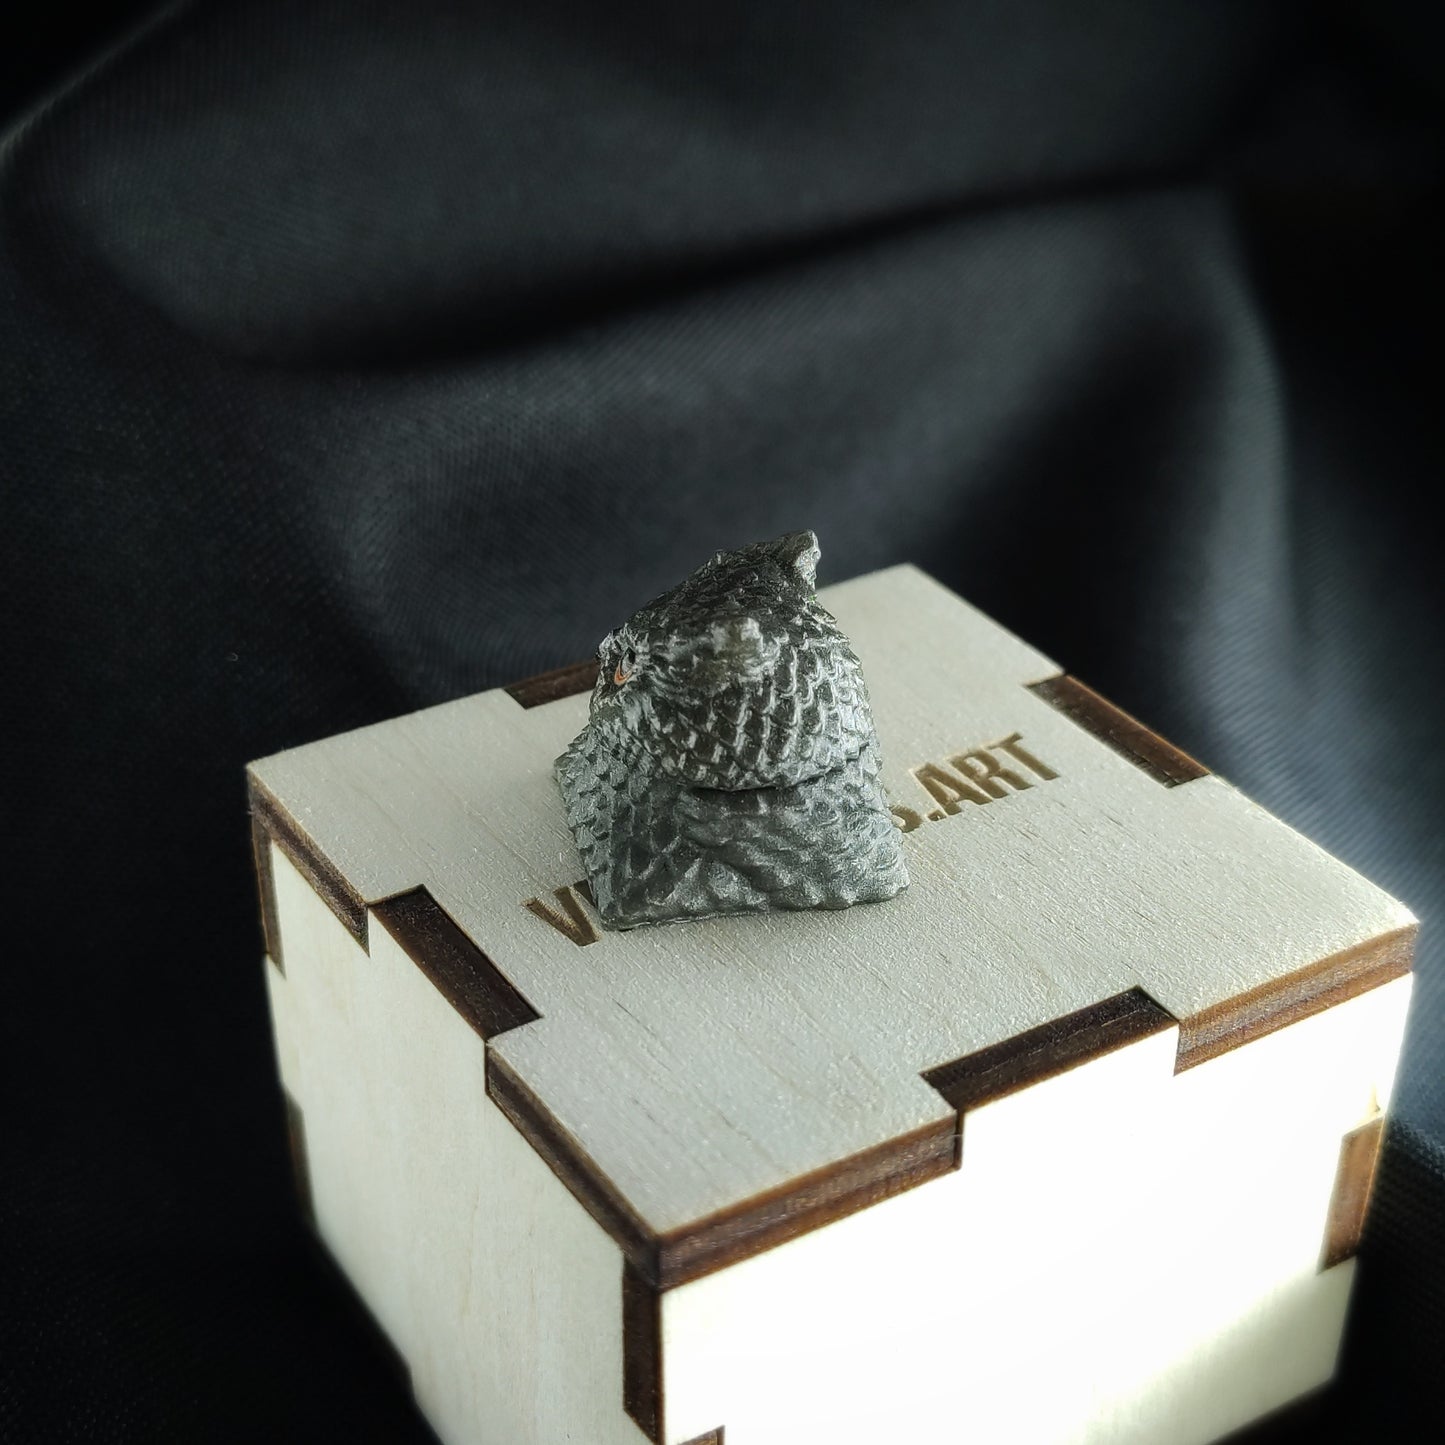 Owl artisan keycap #77